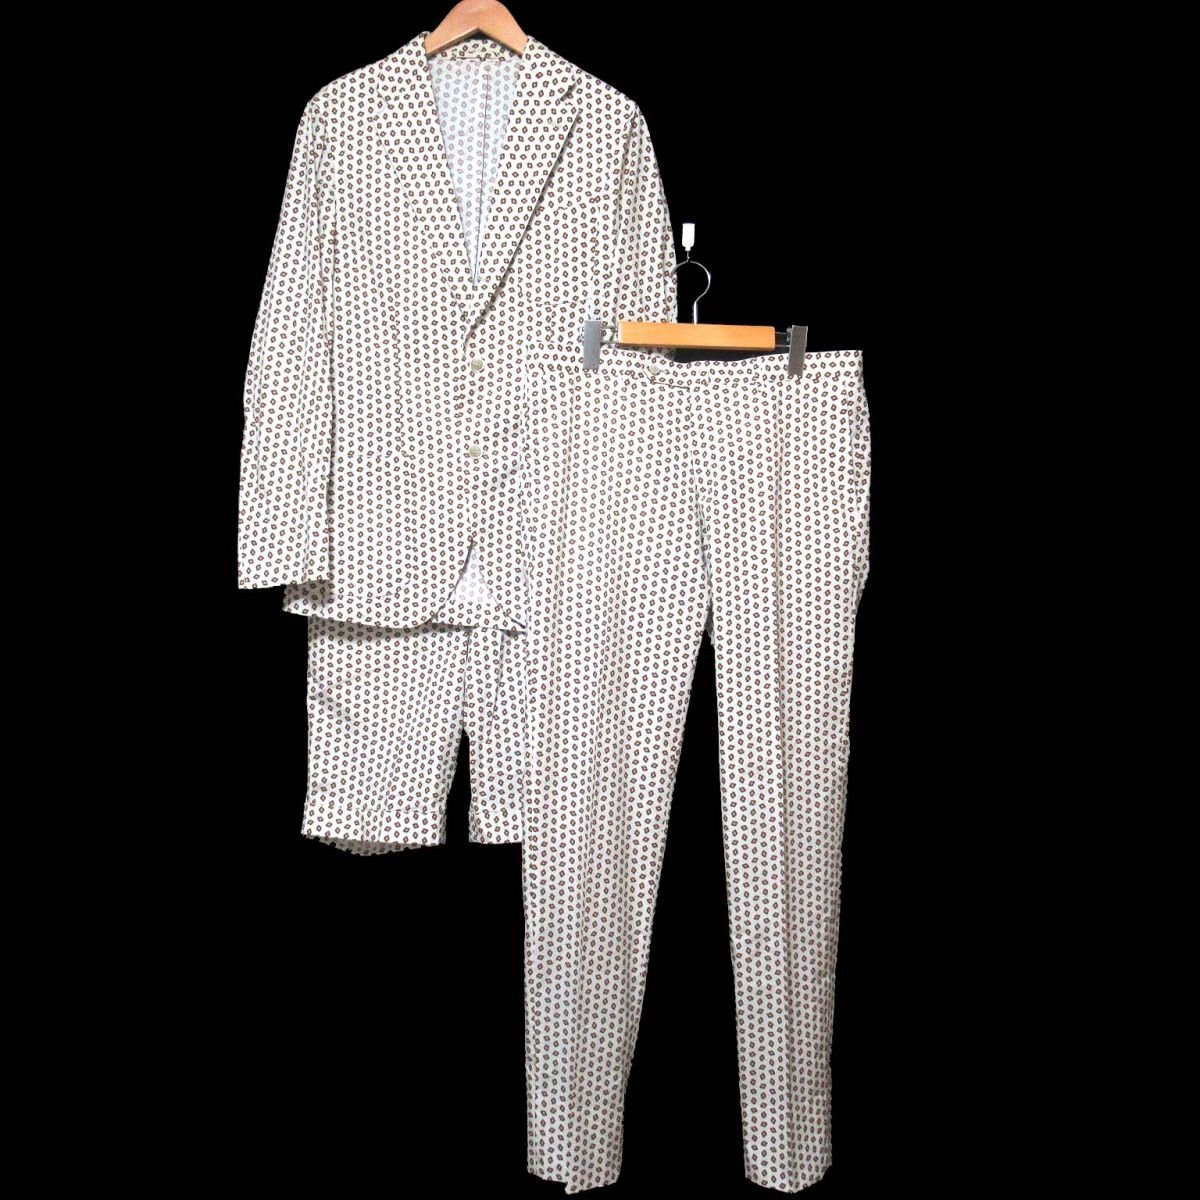  прекрасный товар Barneys New York × кольцо ja Kett цветок рисунок 3 деталь tailored jacket + слаксы брюки + шорты выставить 